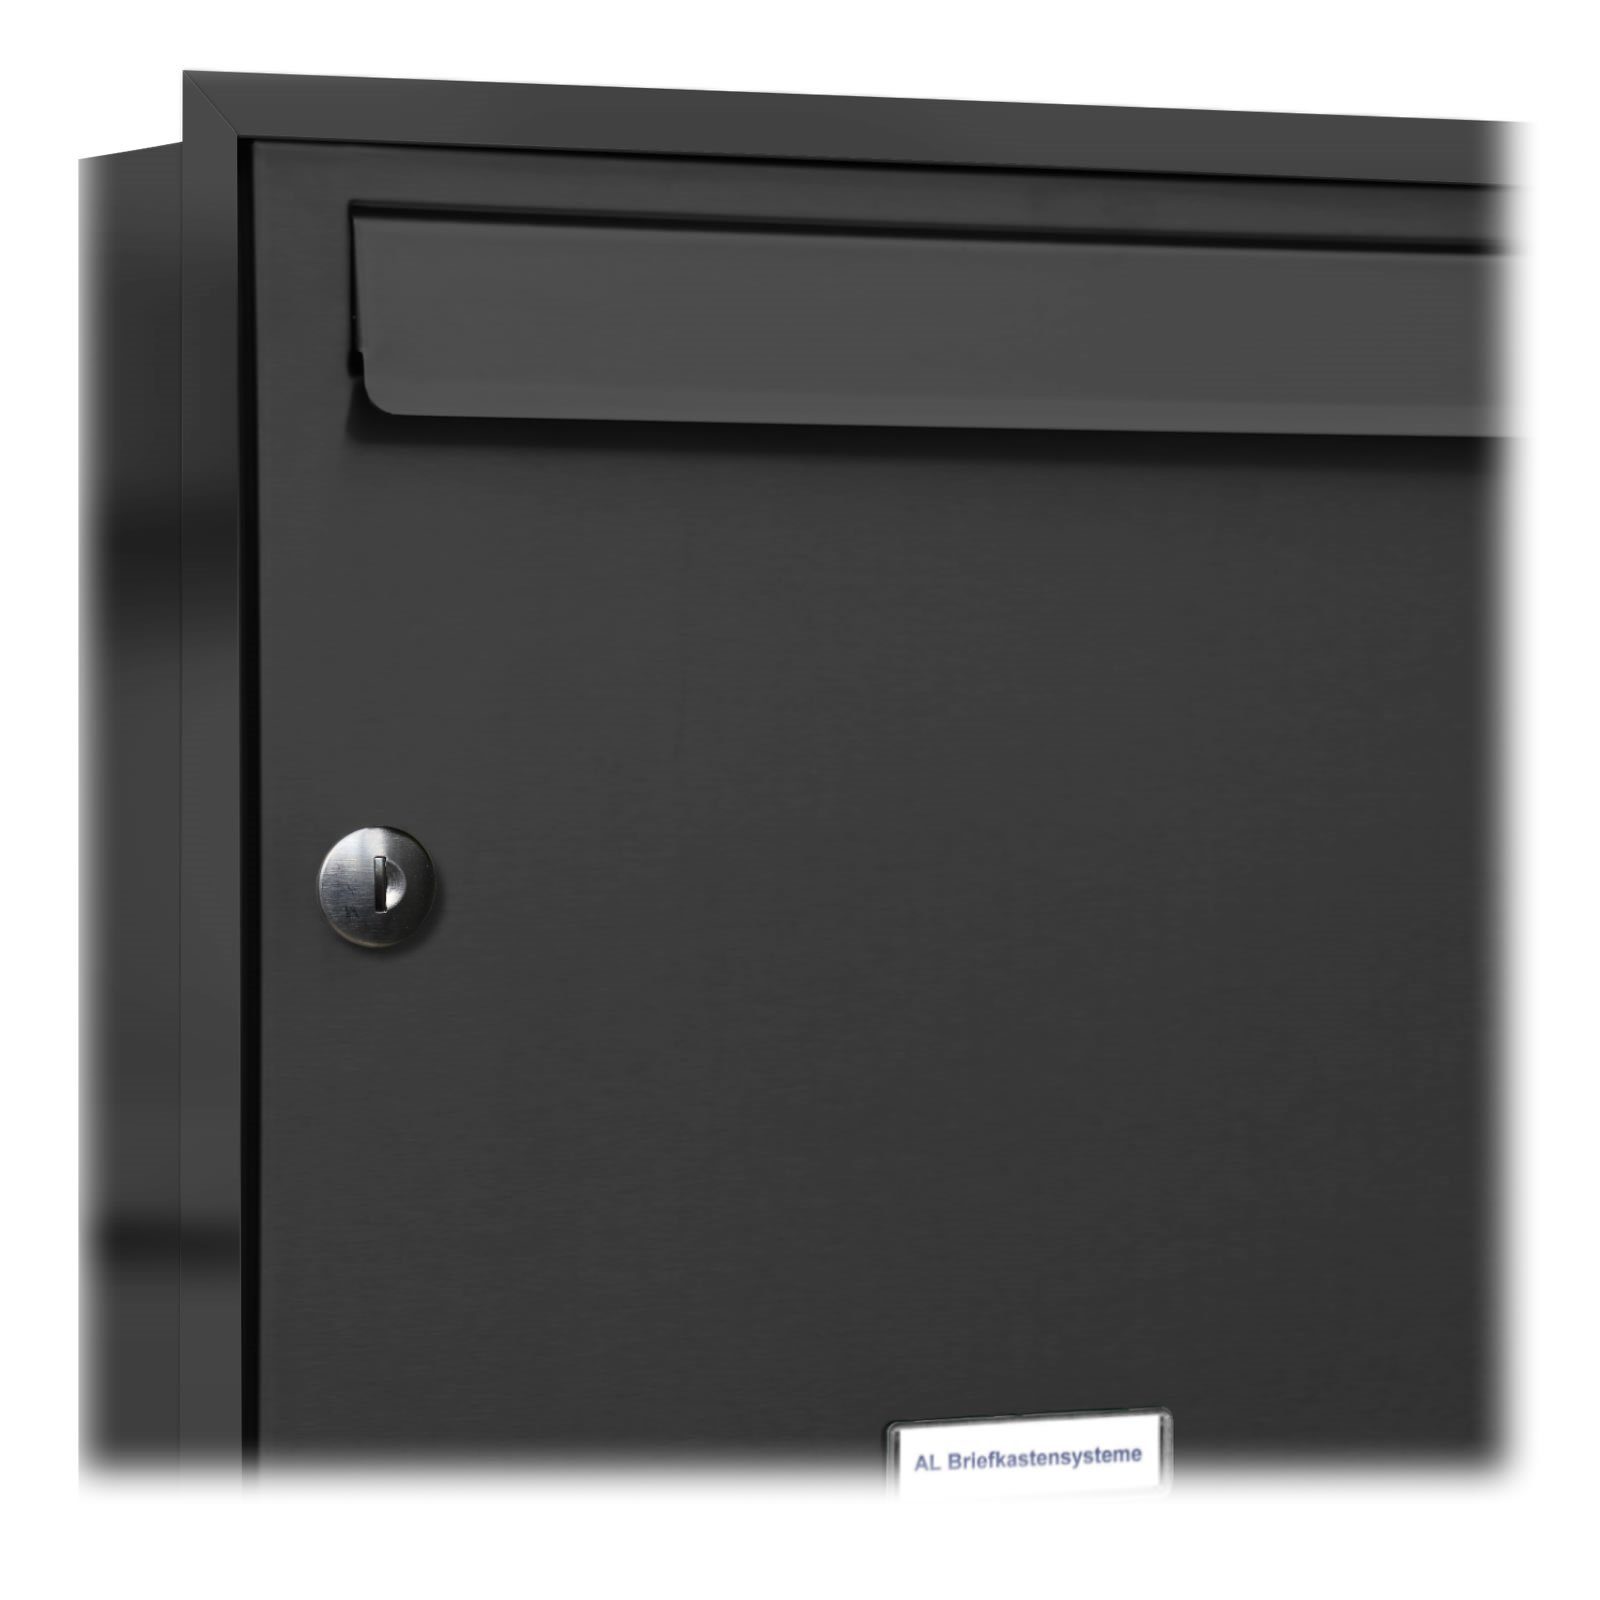 3x2 Briefkasten Wandbriefkasten Unterputz 6 Premium Klingel mit 6er AL Fach Briefkastensysteme Anthrazit